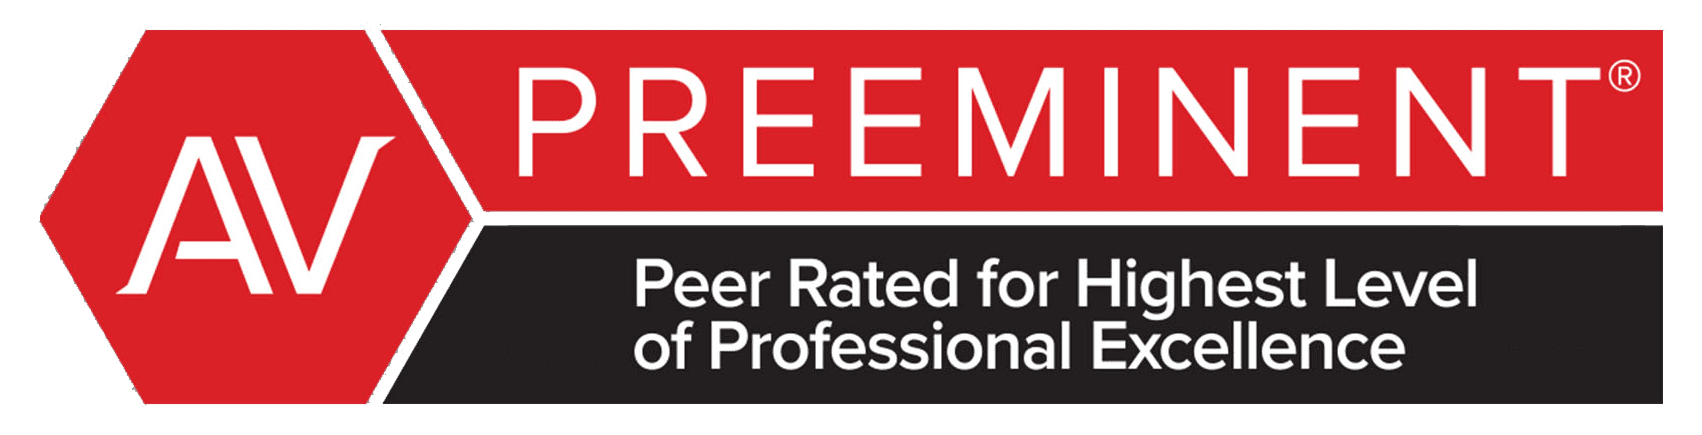 AV preeminent peer rated for highest level of professional excellence